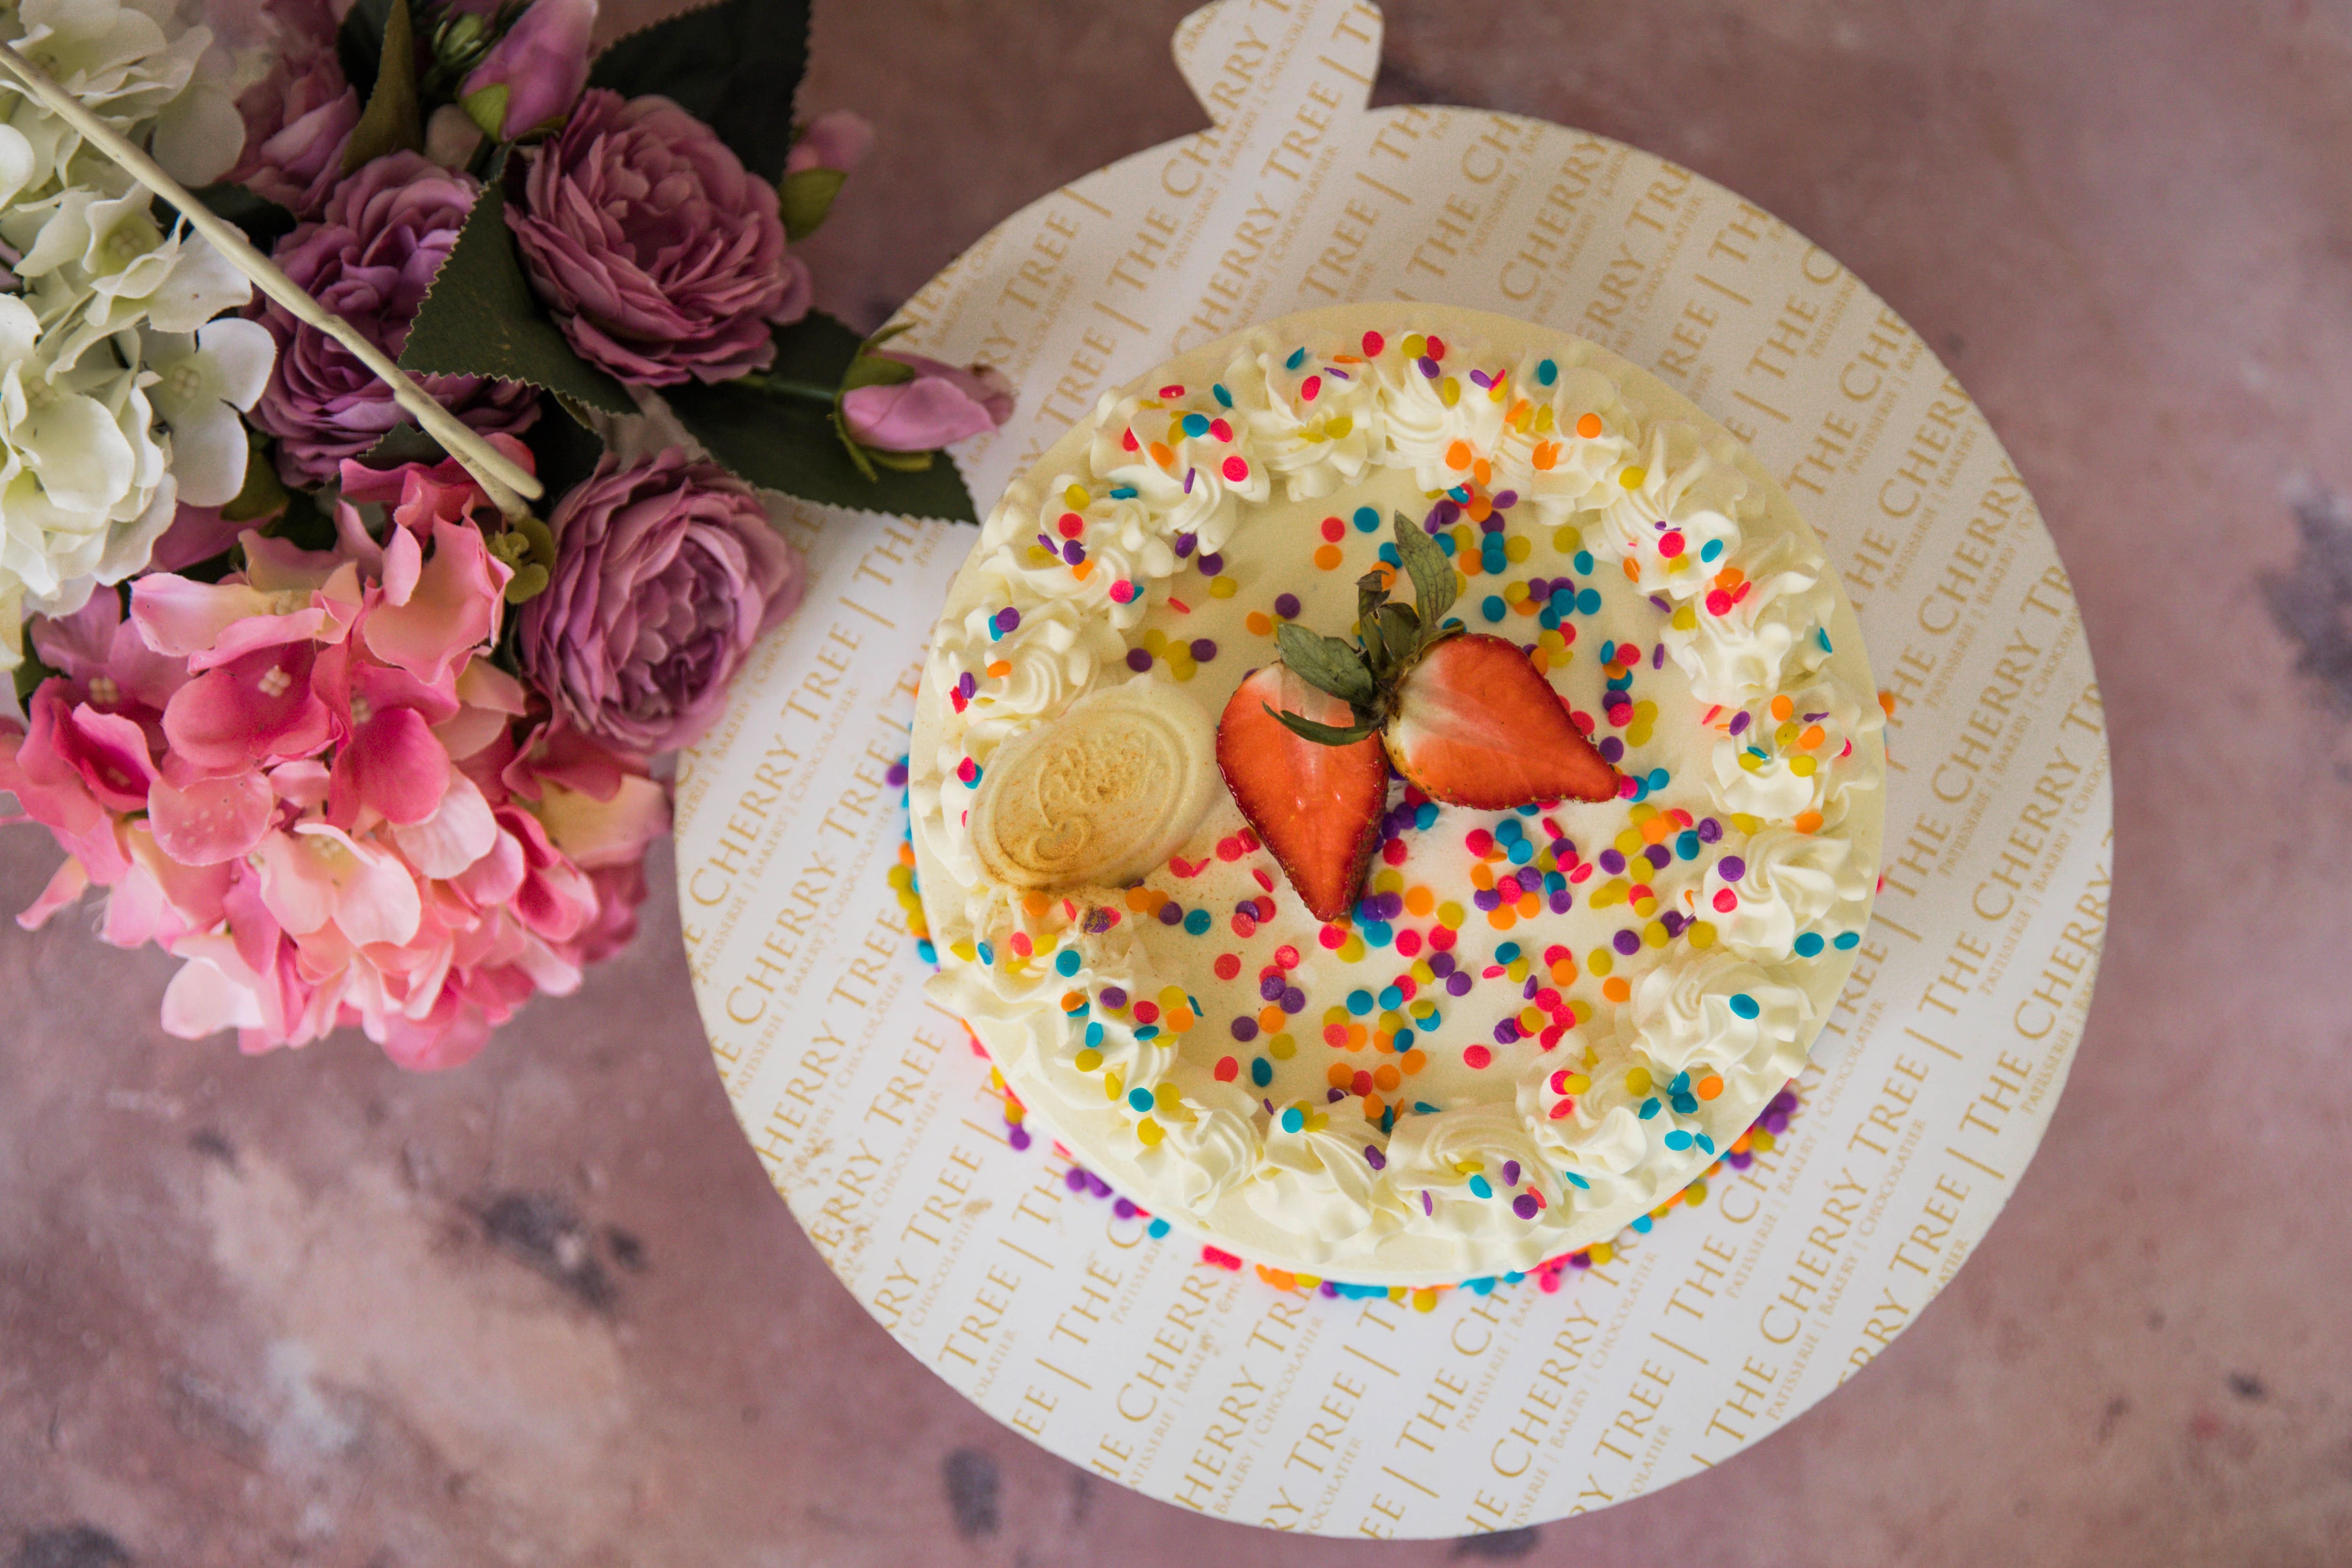 Cherry blossom cake design 🌸🌸🌸 #cakesofinstagram #cherryblossomcake  #demonslayercake #demonslayer #birthdaycakeideas #cakedesign | Instagram